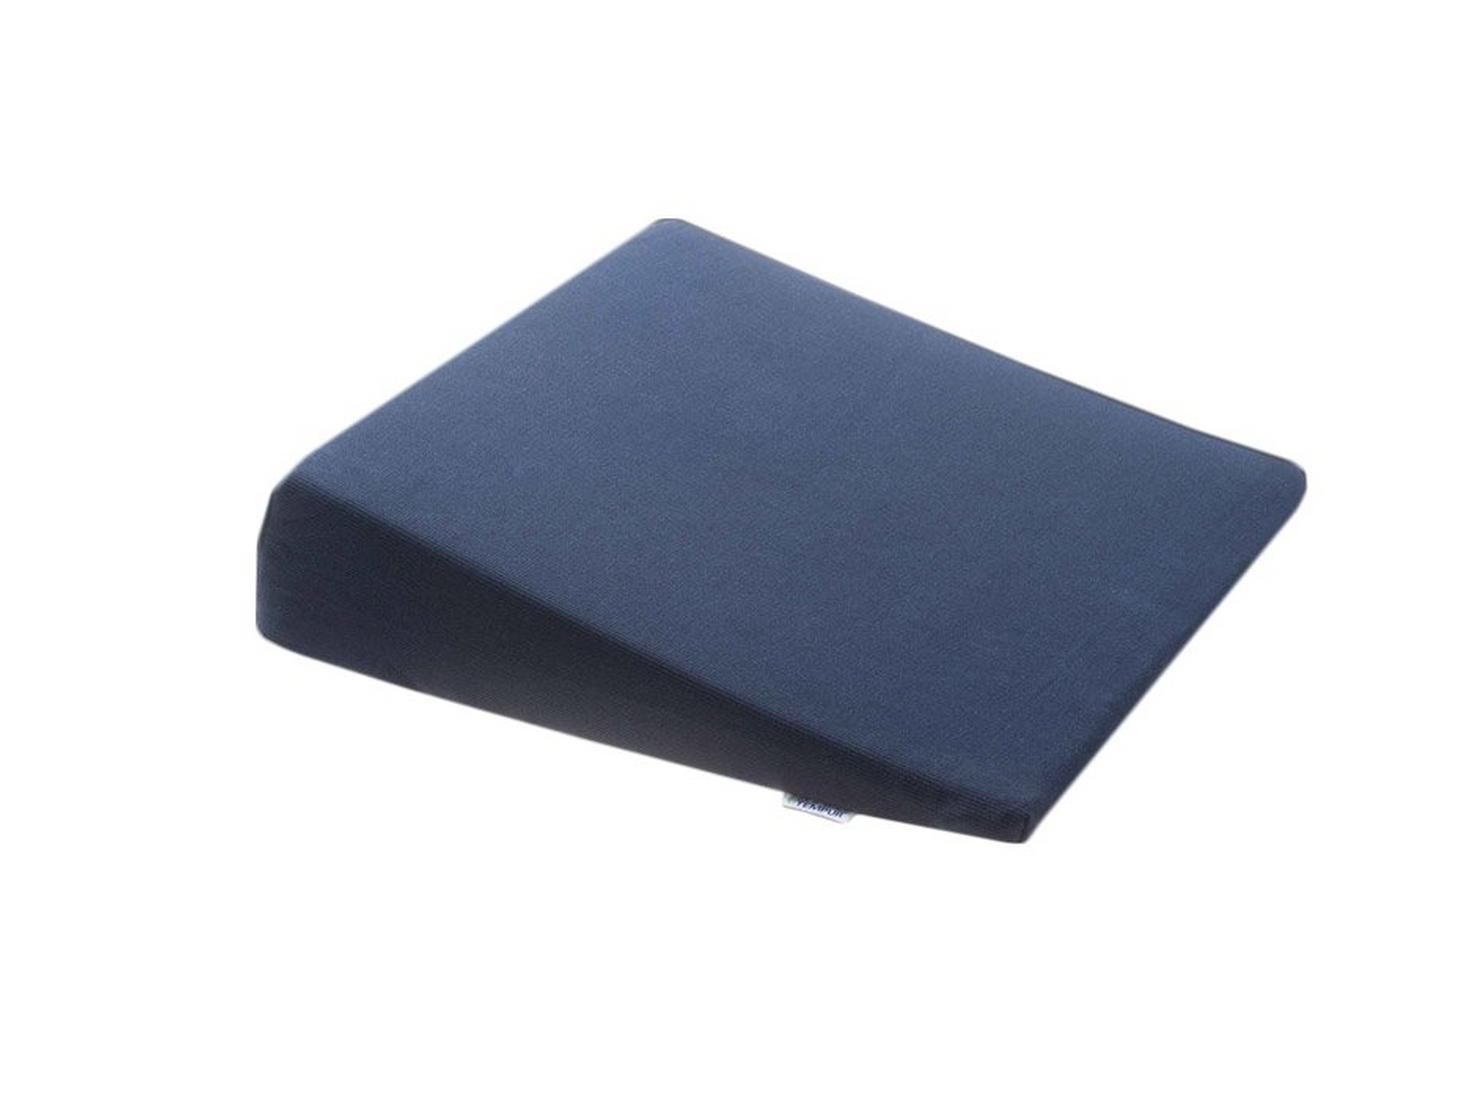 Tempur Seat Wedge Pillow - Mattress & Pillow SciencePillows